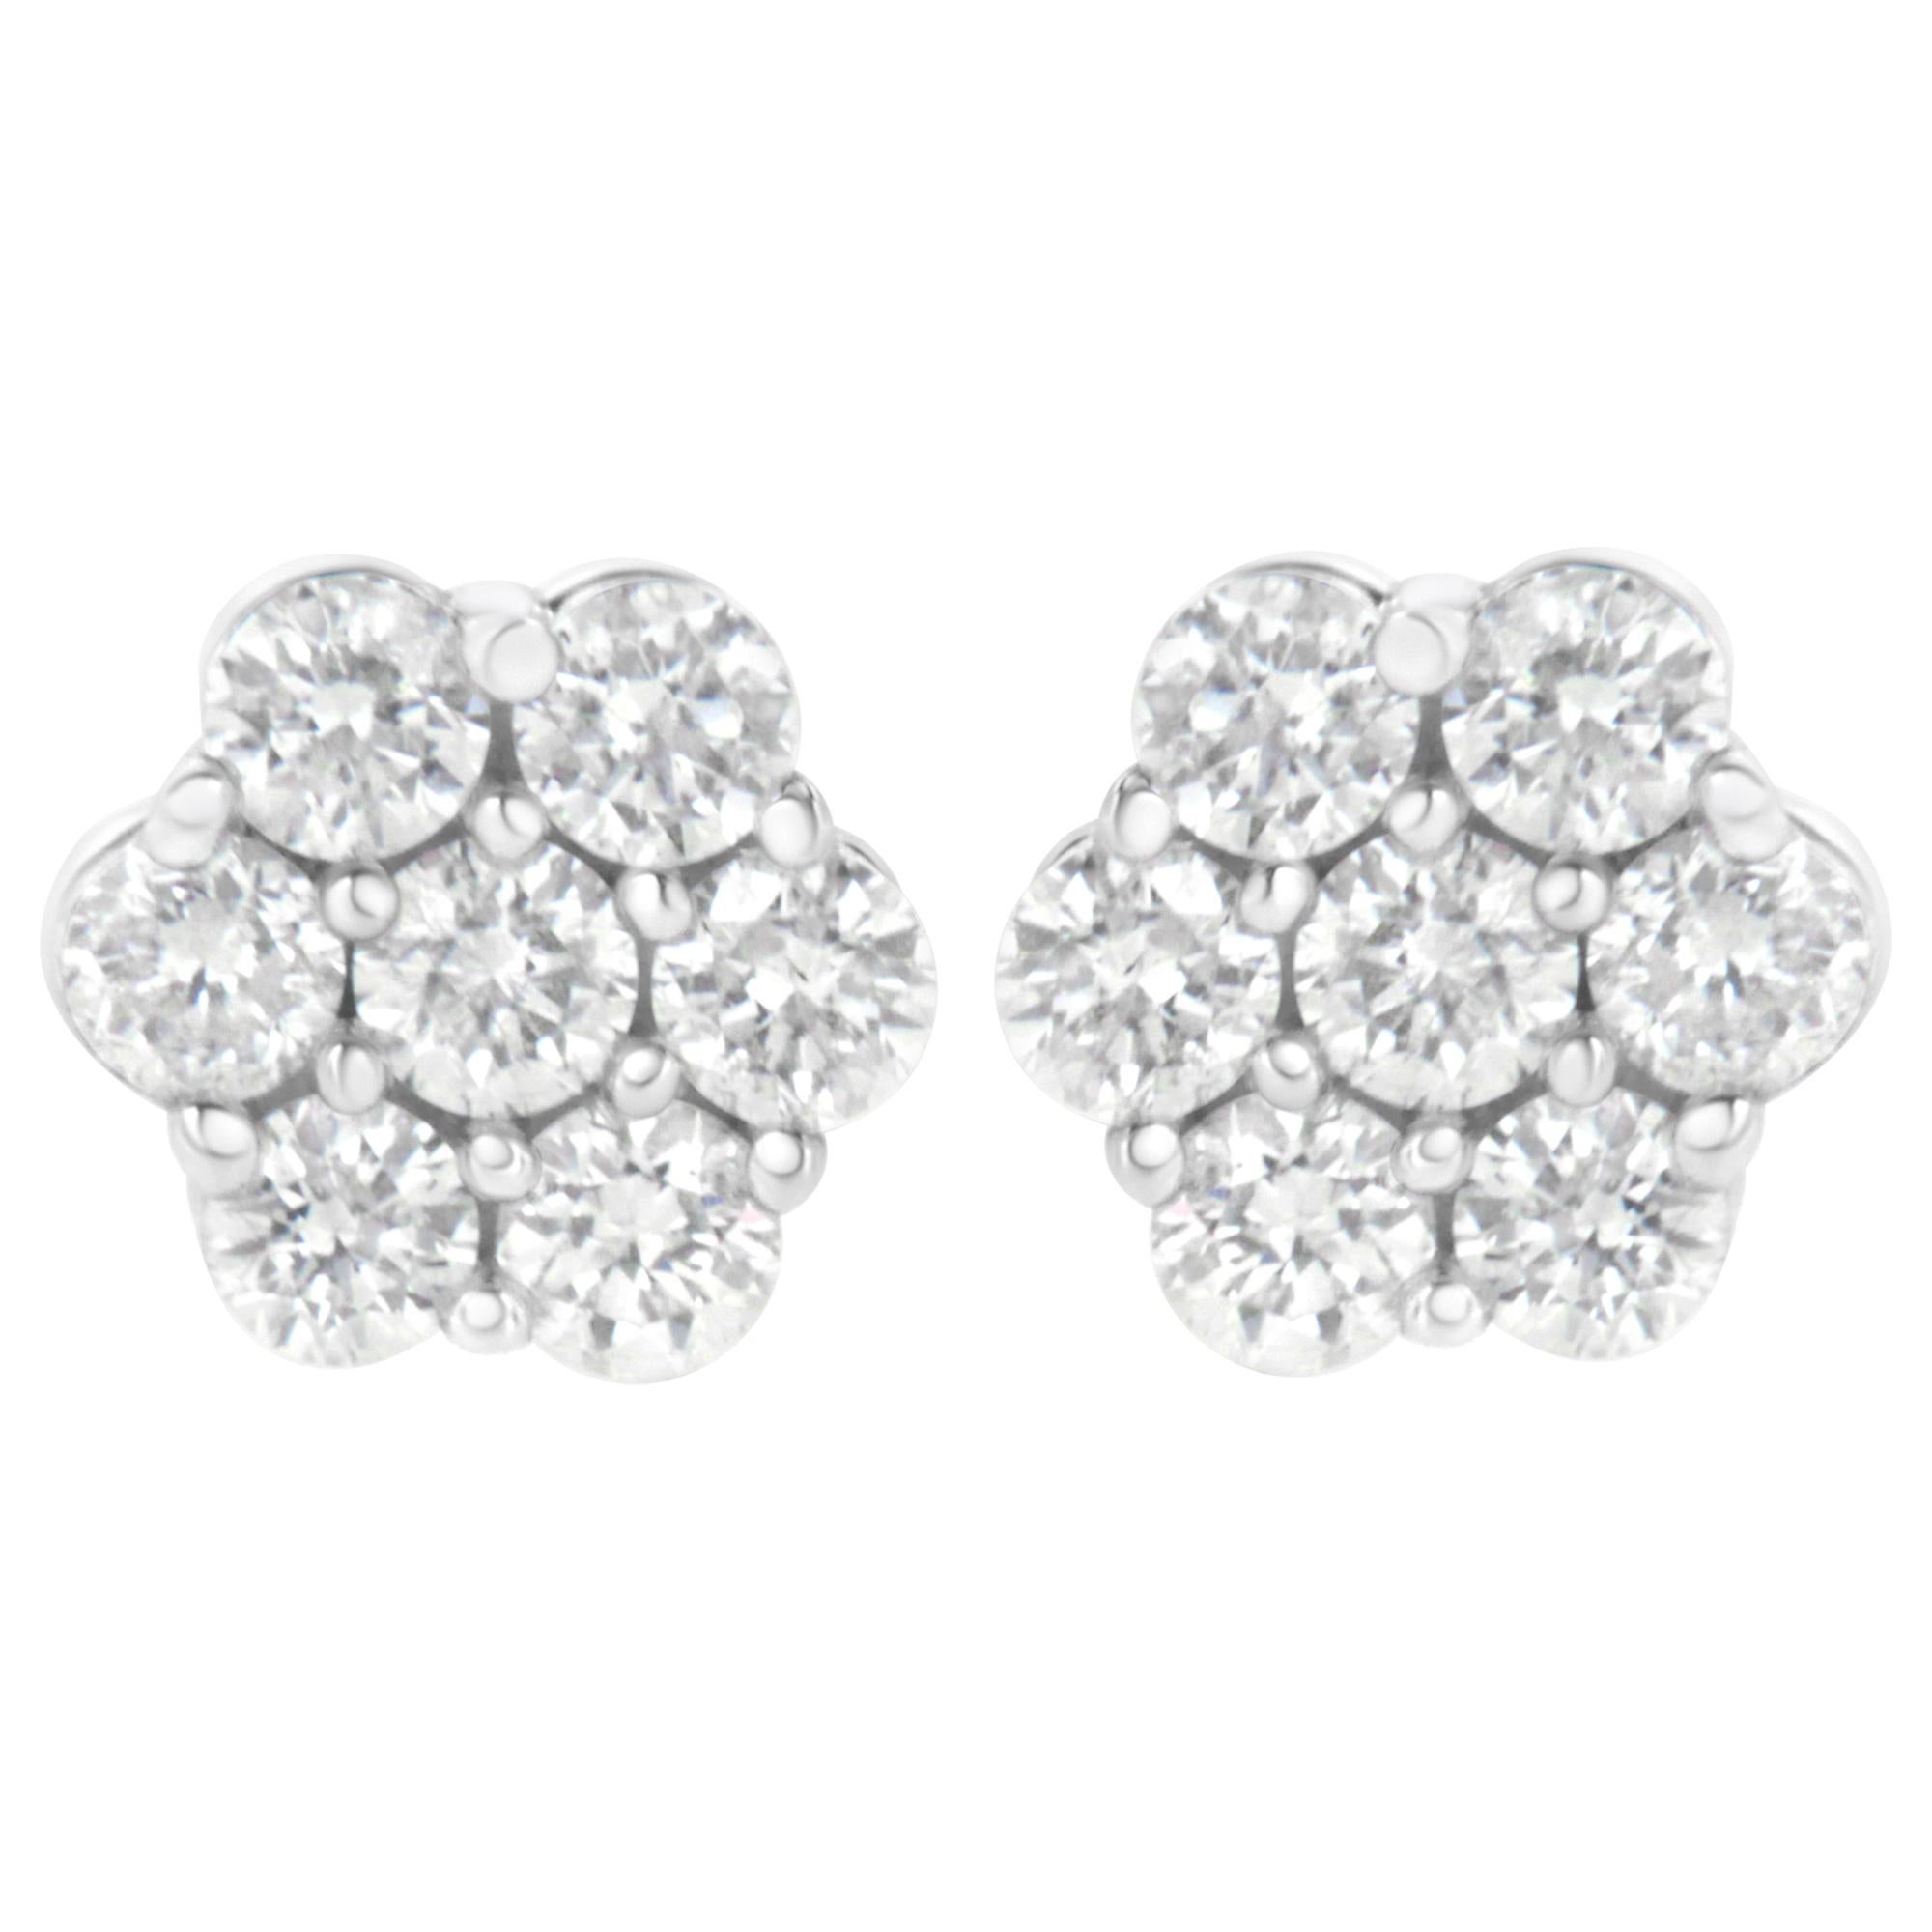 14K White Gold 1.0 Carat Diamond Composite Stud Earrings